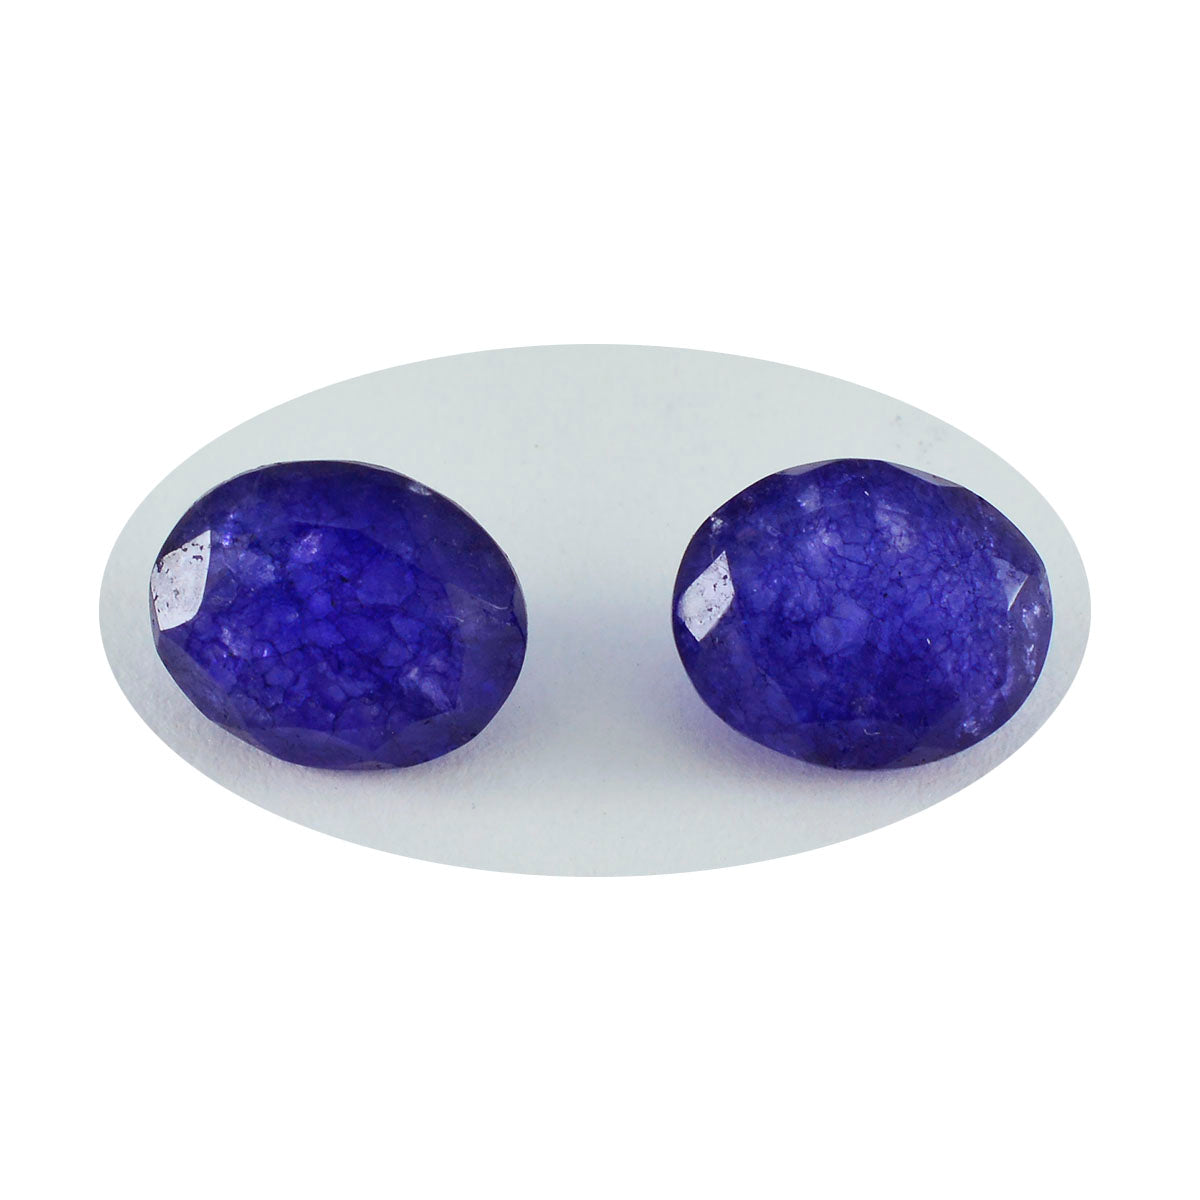 riyogems 1шт настоящая синяя яшма ограненная 7x9 мм овальная форма привлекательные качественные драгоценные камни